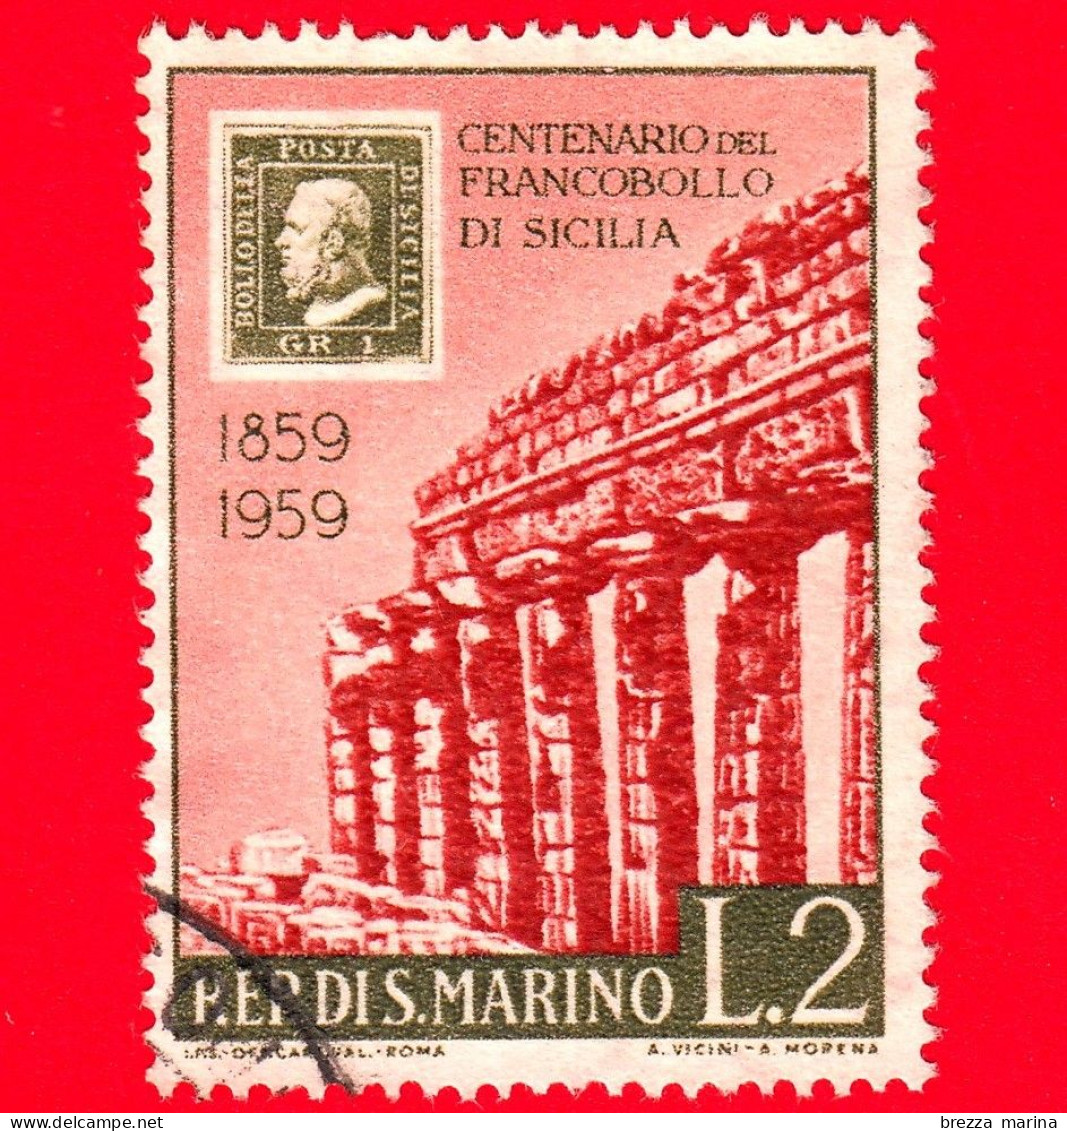 SAN MARINO - Usato - 1959 - Centenario Dei Francobolli Di Sicilia - Tempio Di Selinunte - 2 L. - Usados